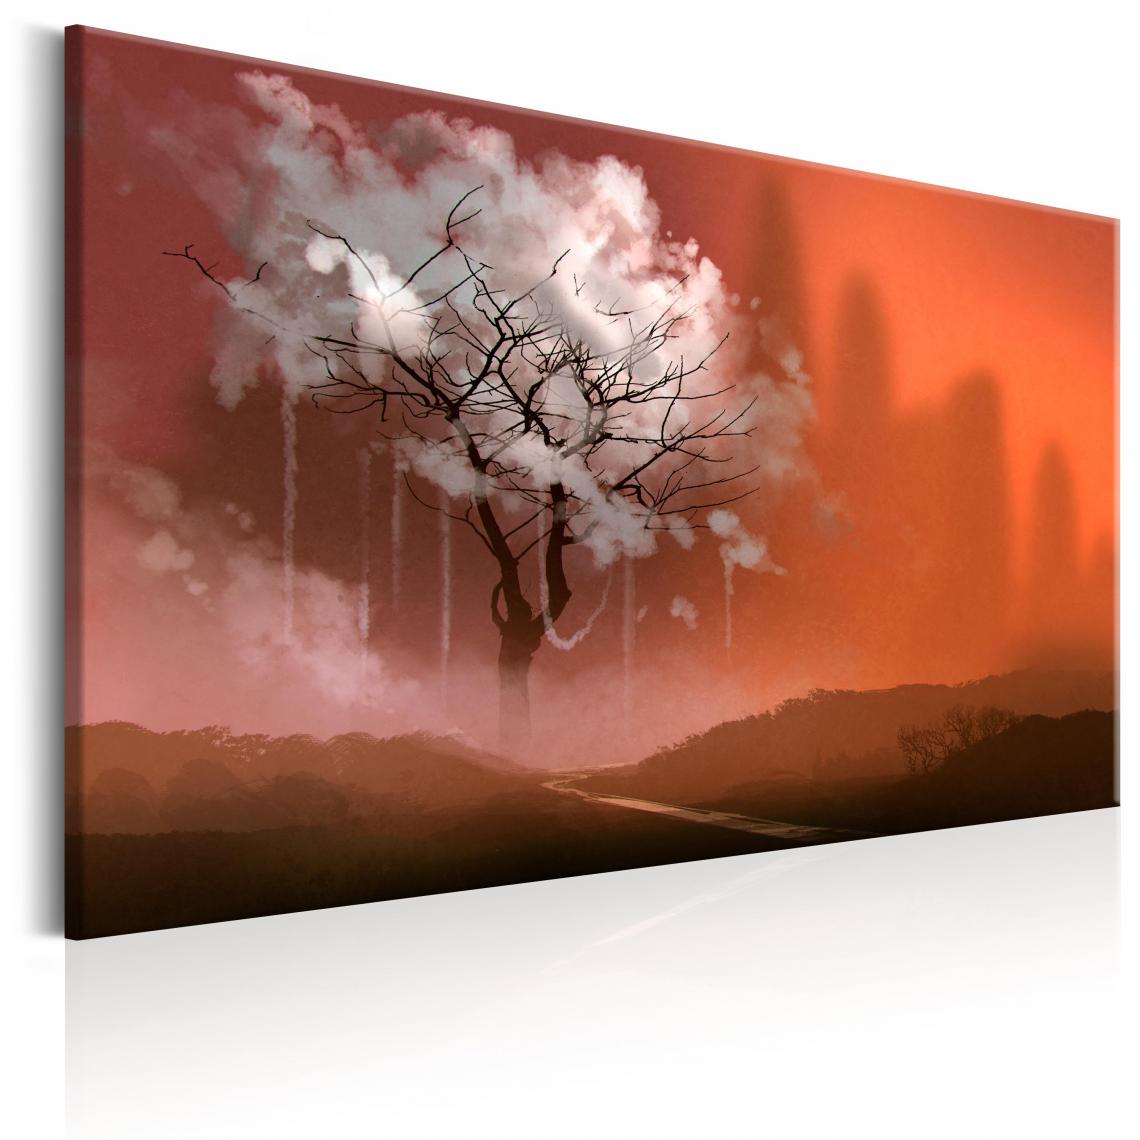 Decoshop26 - Tableau sur toile décoration murale image imprimée cadre en bois à suspendre Pays des rêves 120x80 cm 11_0005960 - Tableaux, peintures